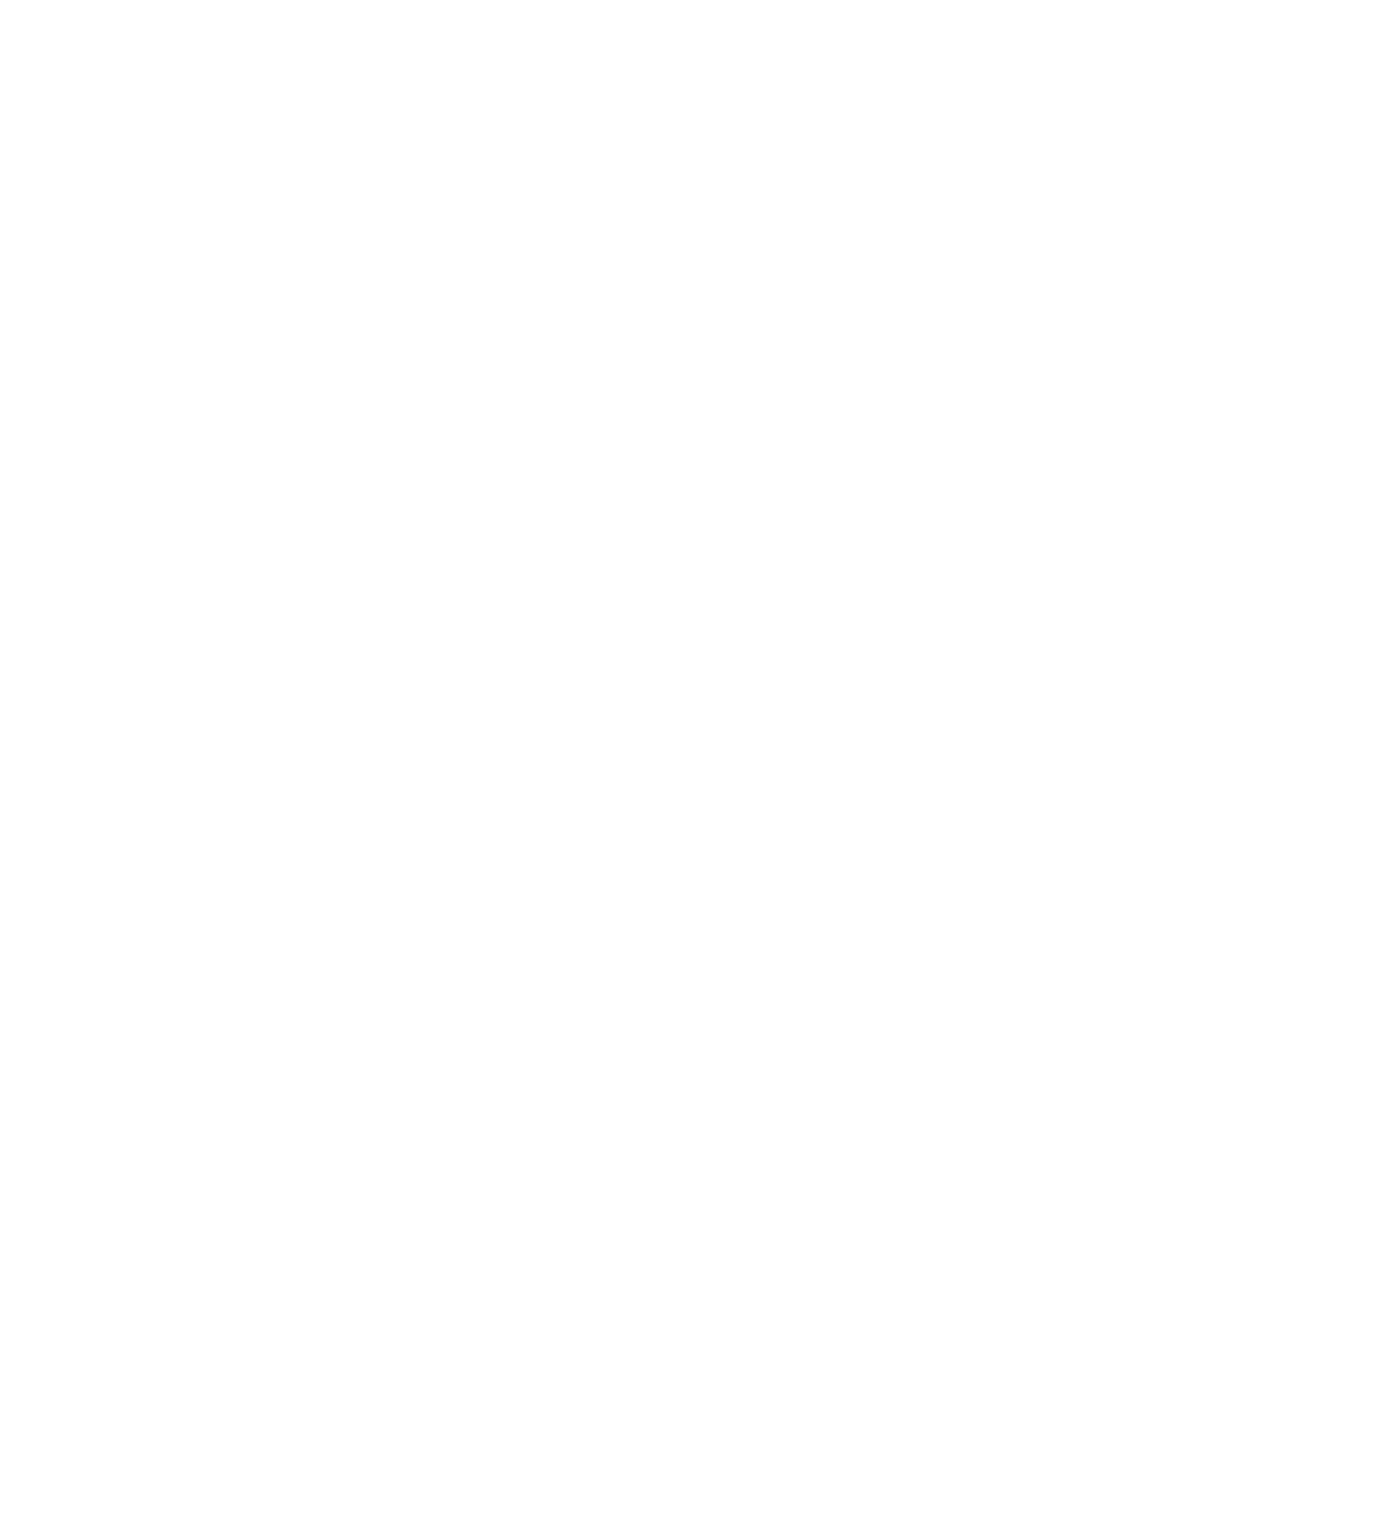 Baidu logo pour fonds sombres (PNG transparent)